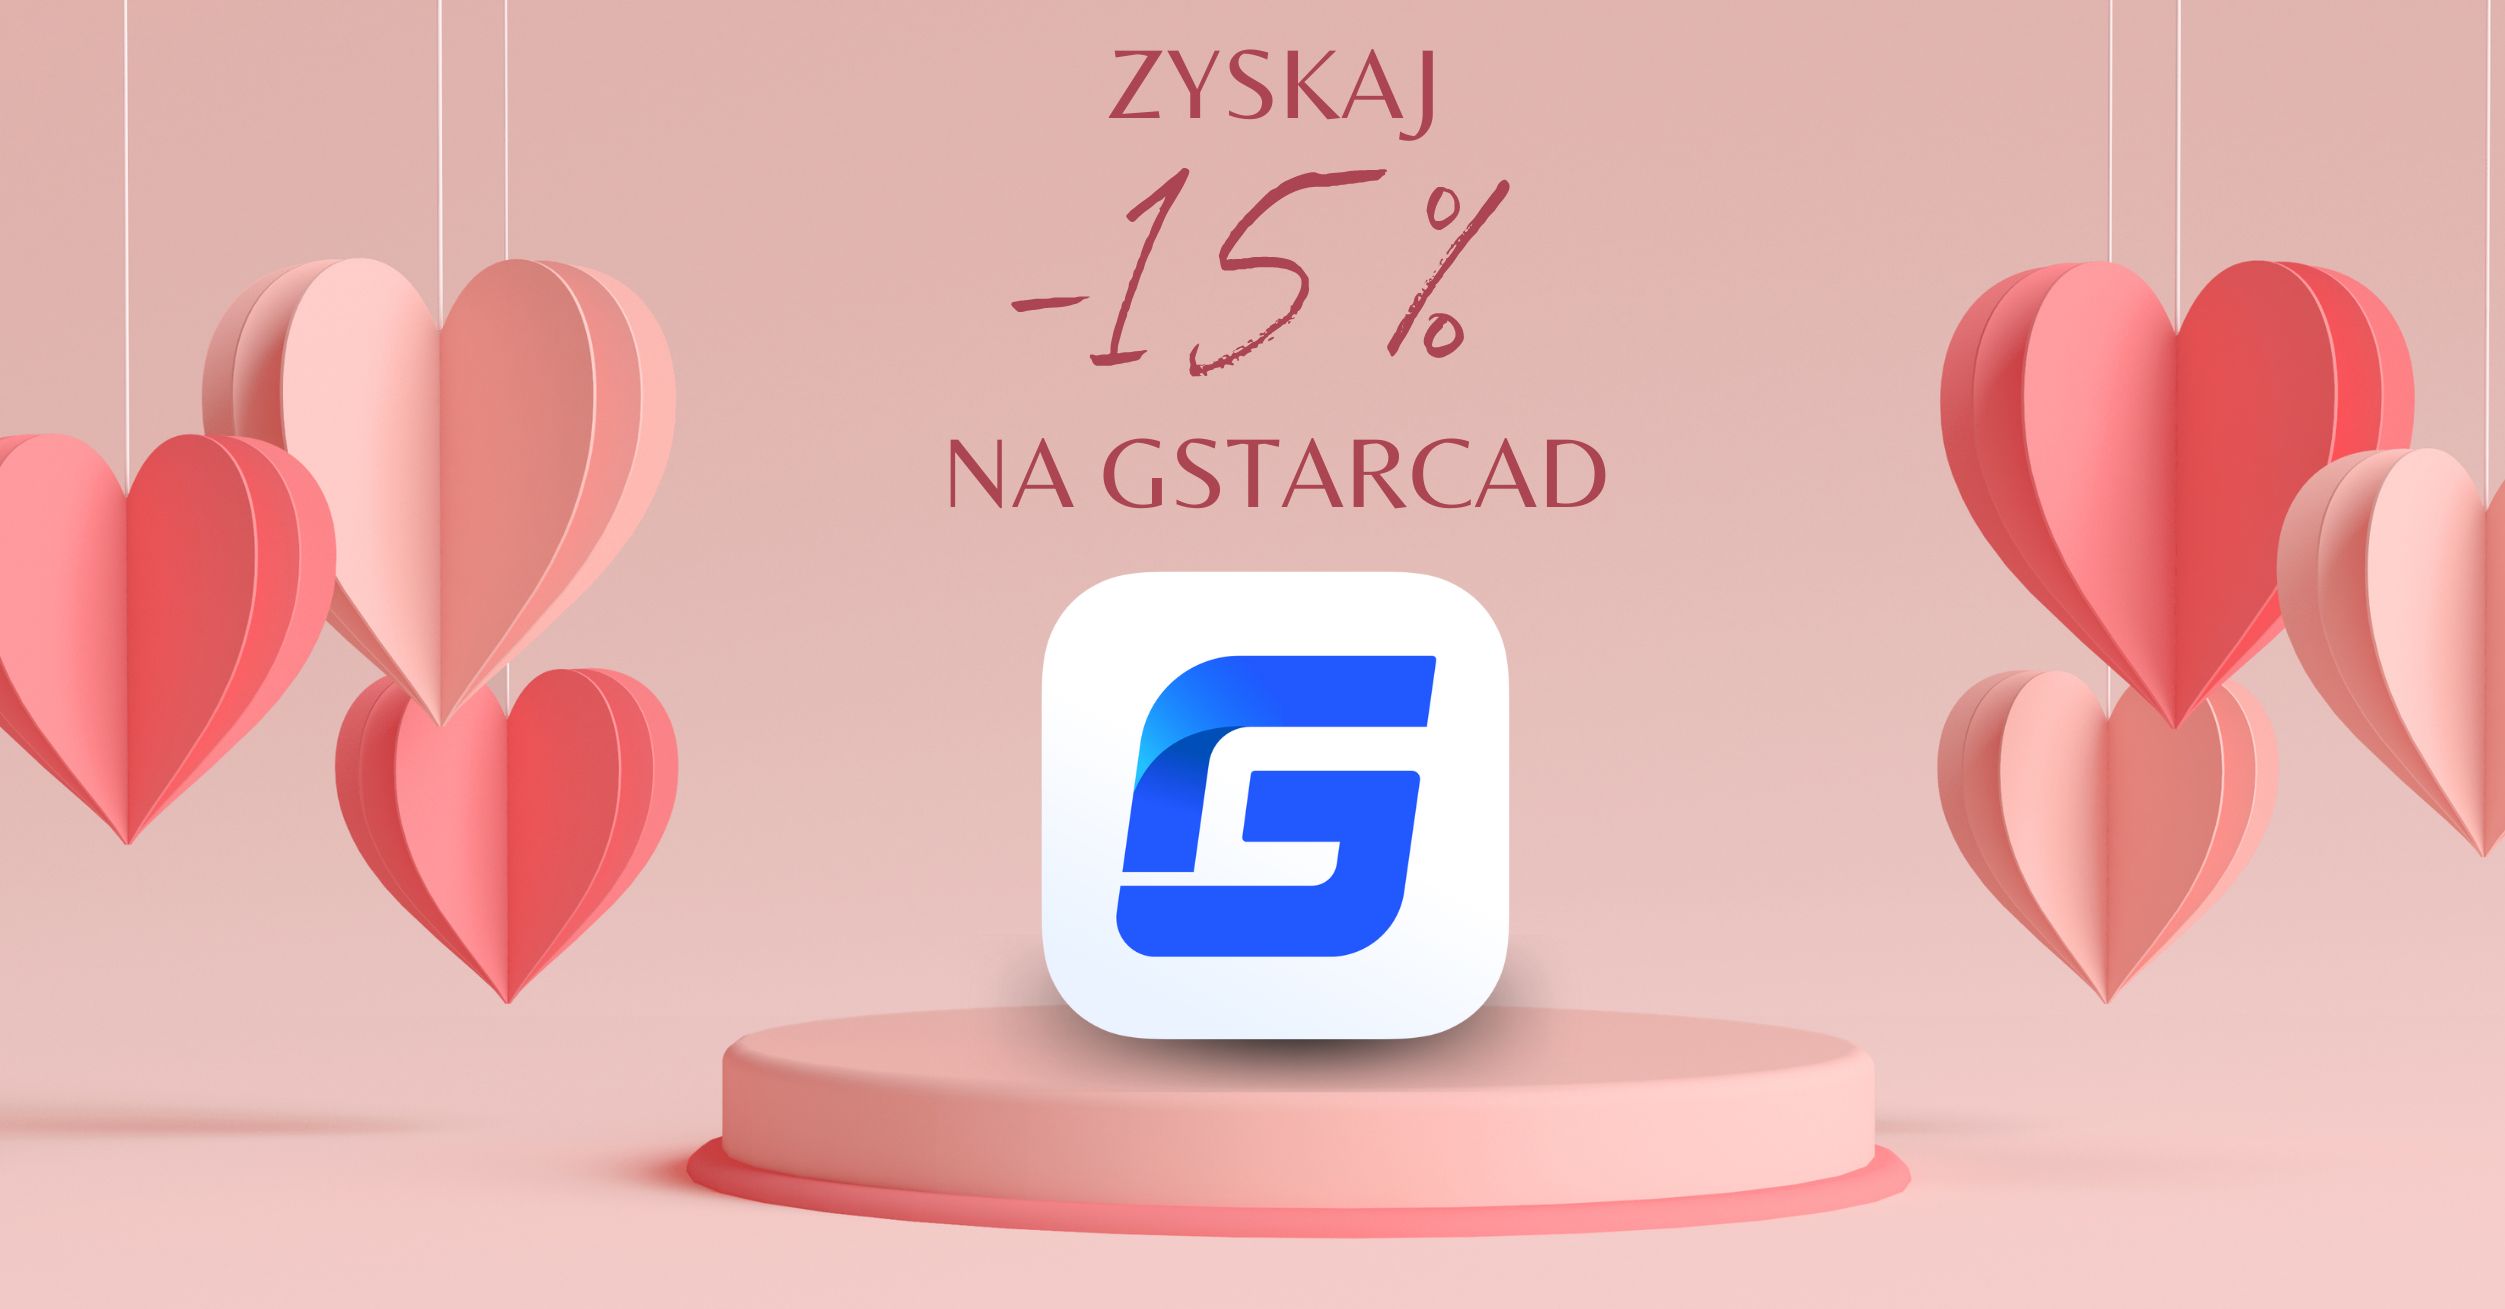 Walentynkowe -15% na GstarCAD!